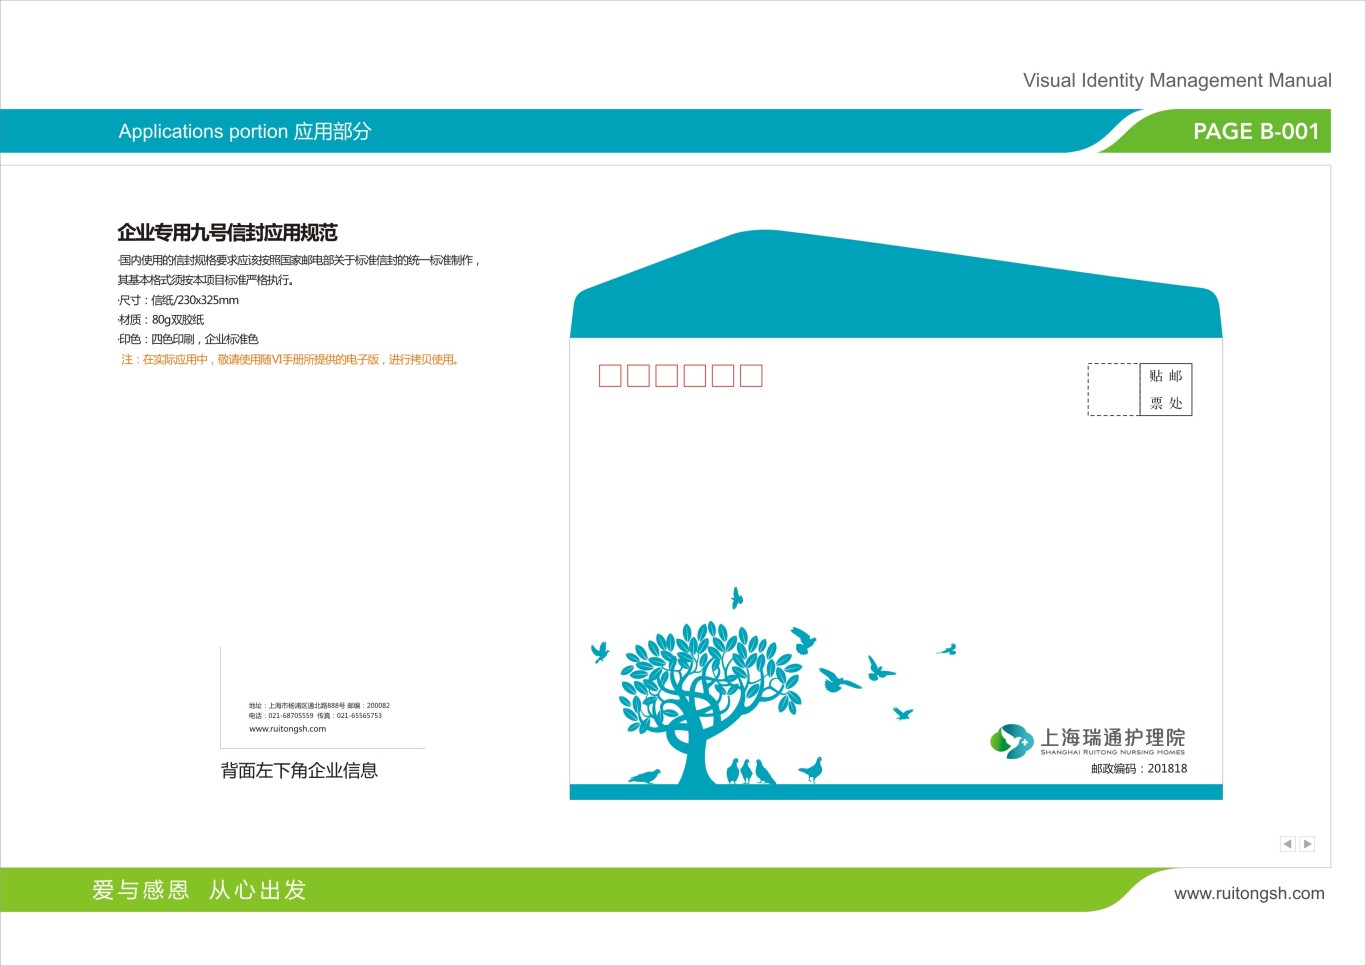 上海瑞通护理院标志VI设计图46